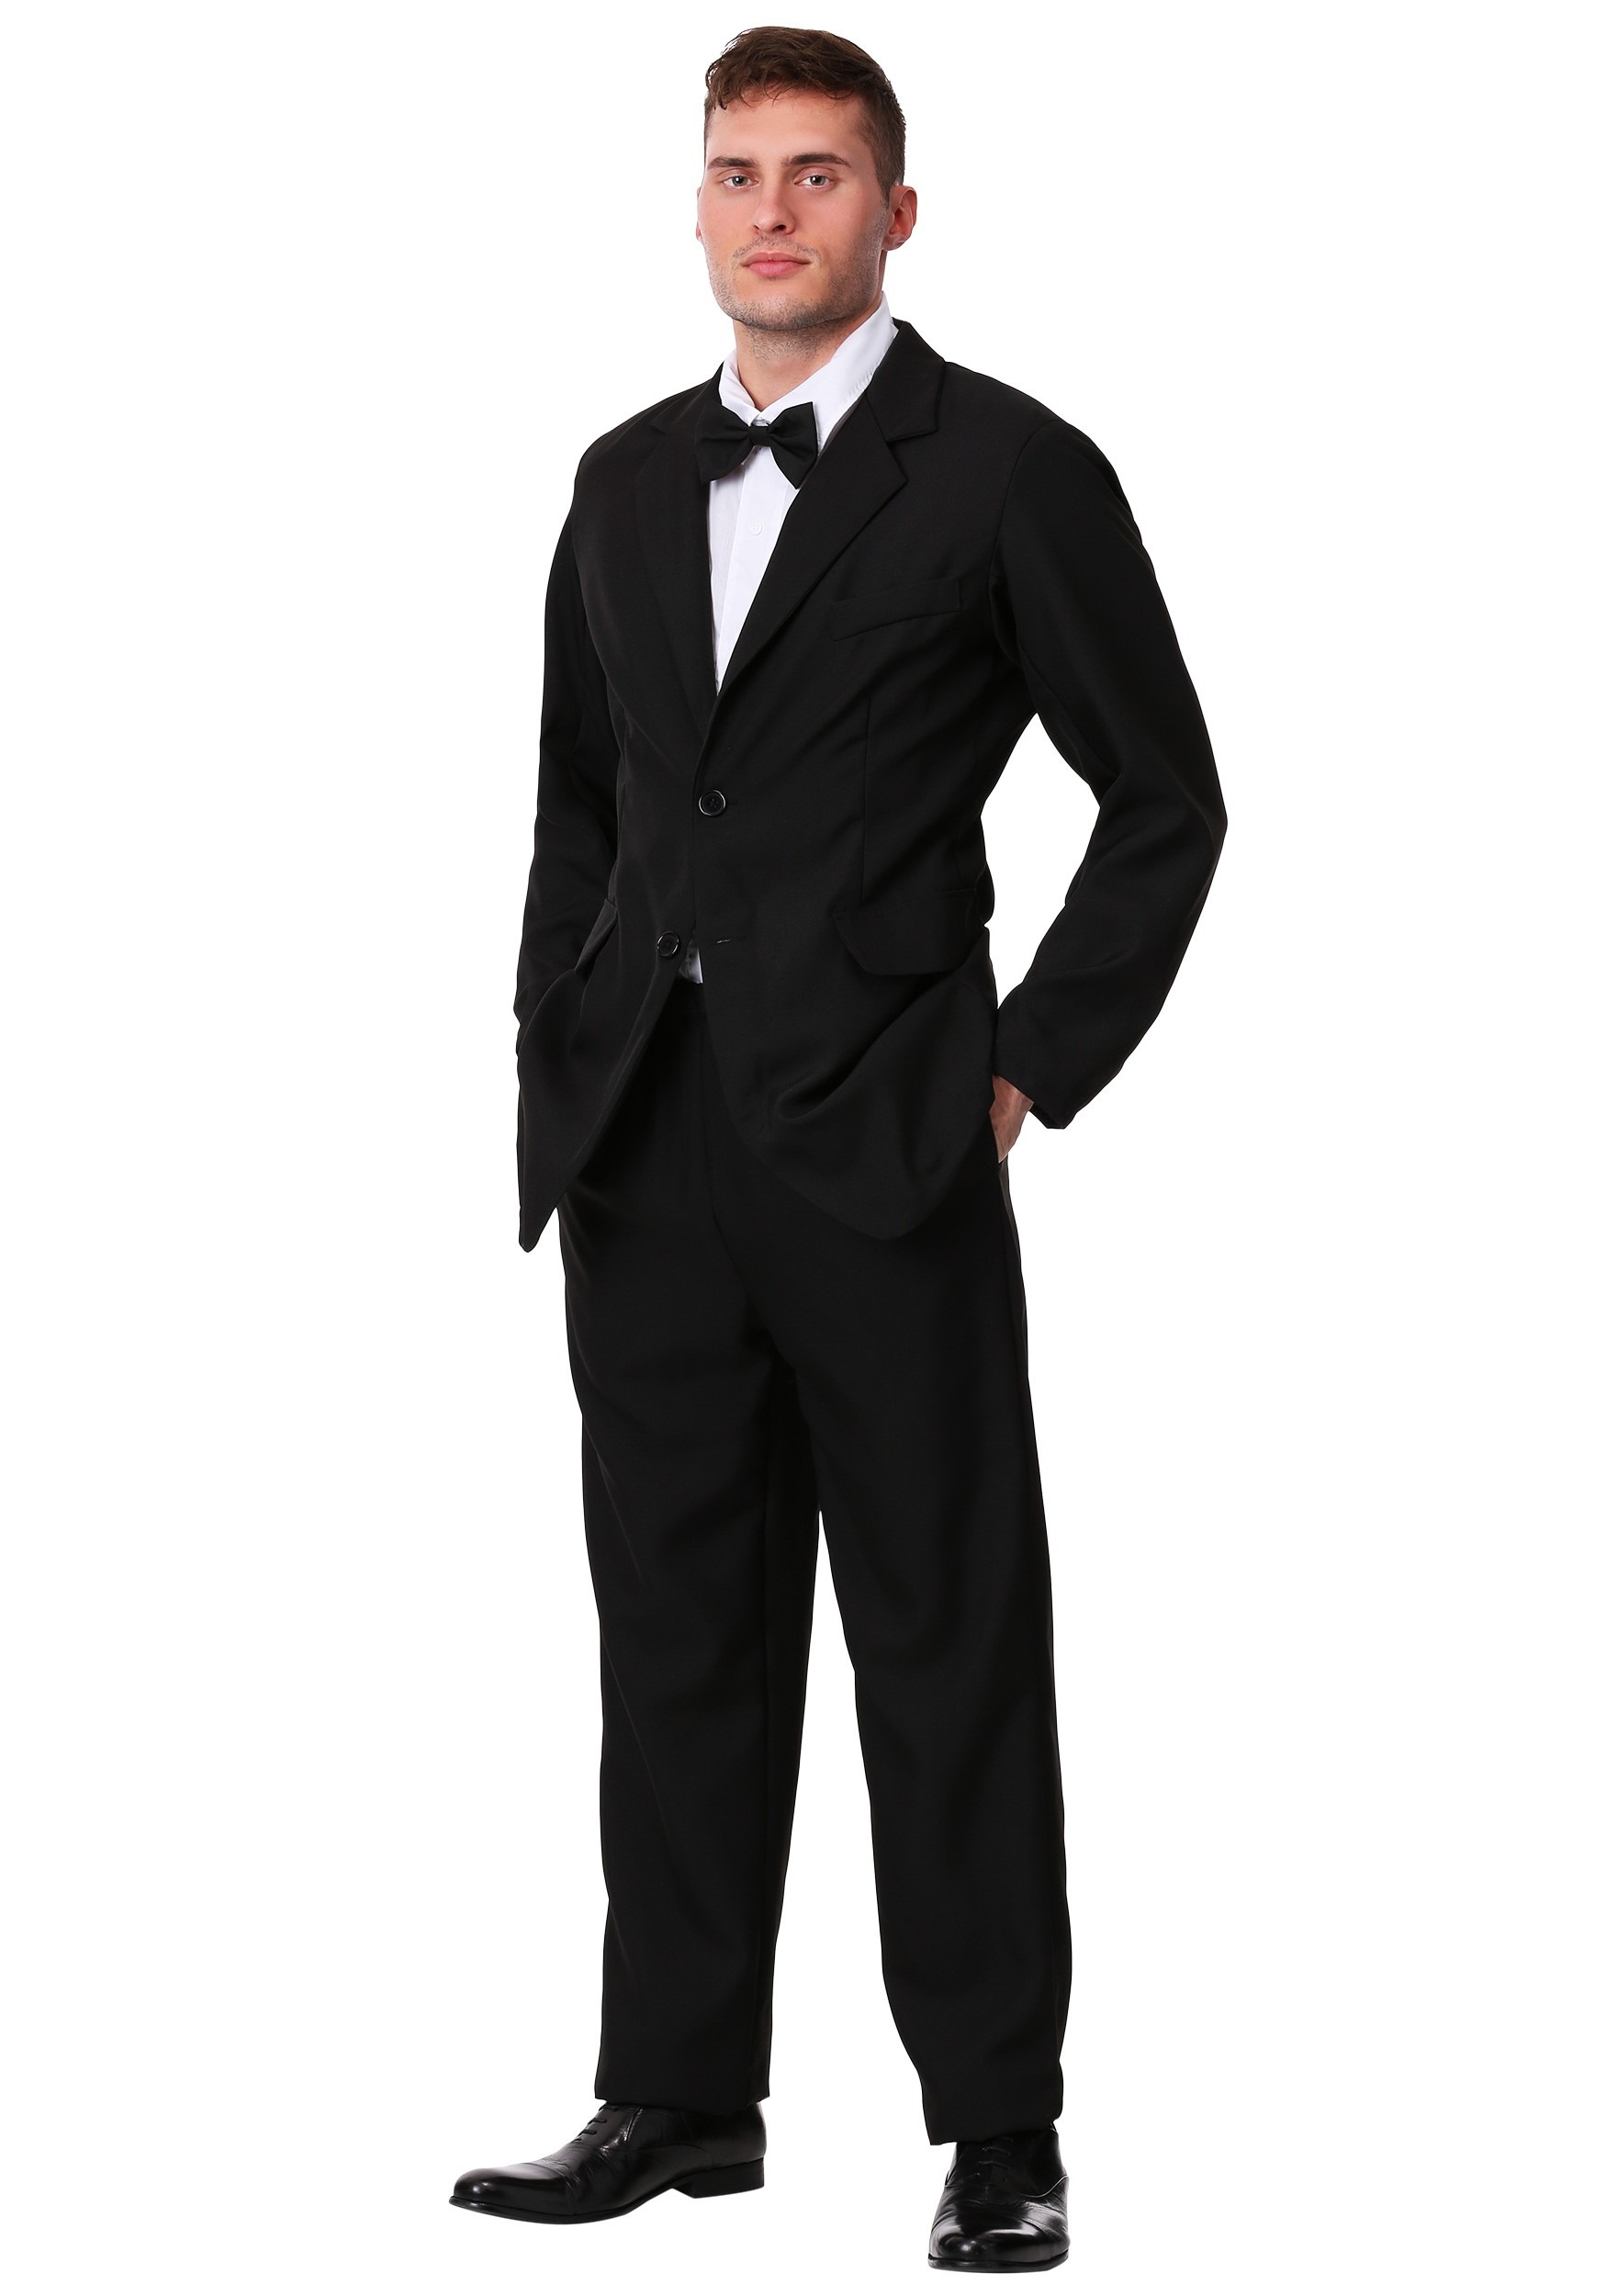 Photos - Fancy Dress FUN Costumes Men's Plus Size Black Suit Costume